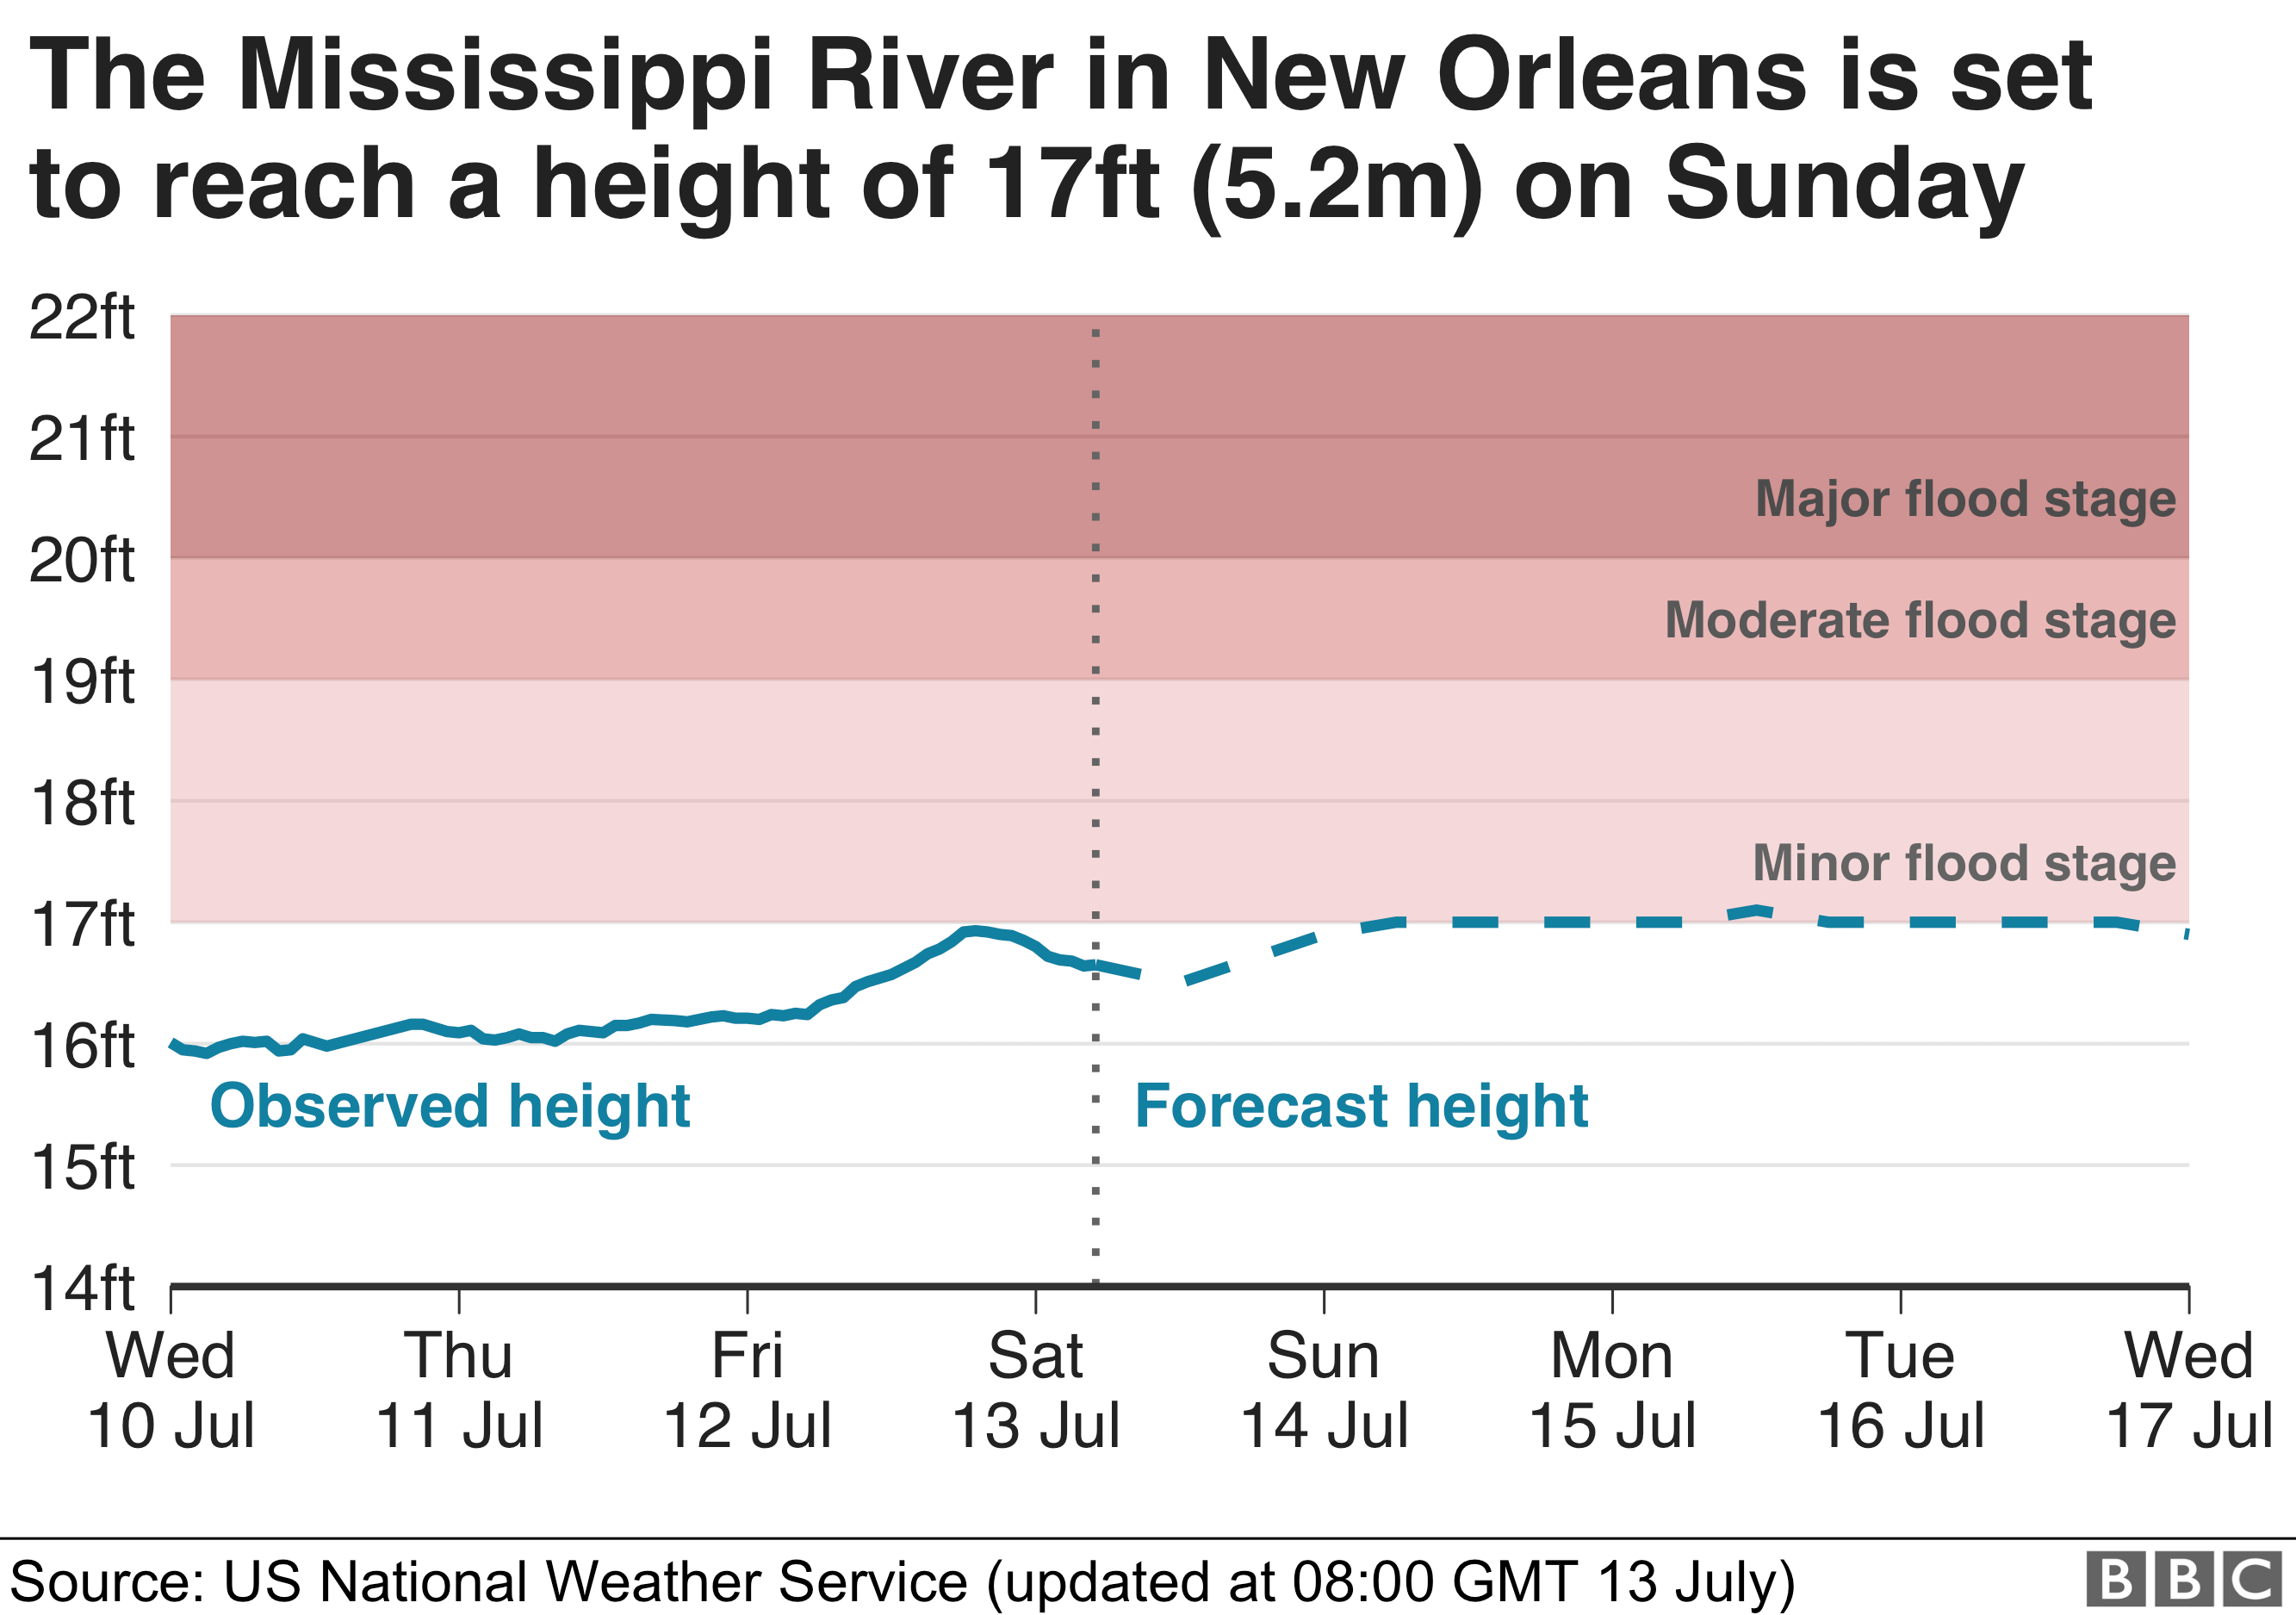 график, показывающий ожидаемую высоту реки Миссисипи